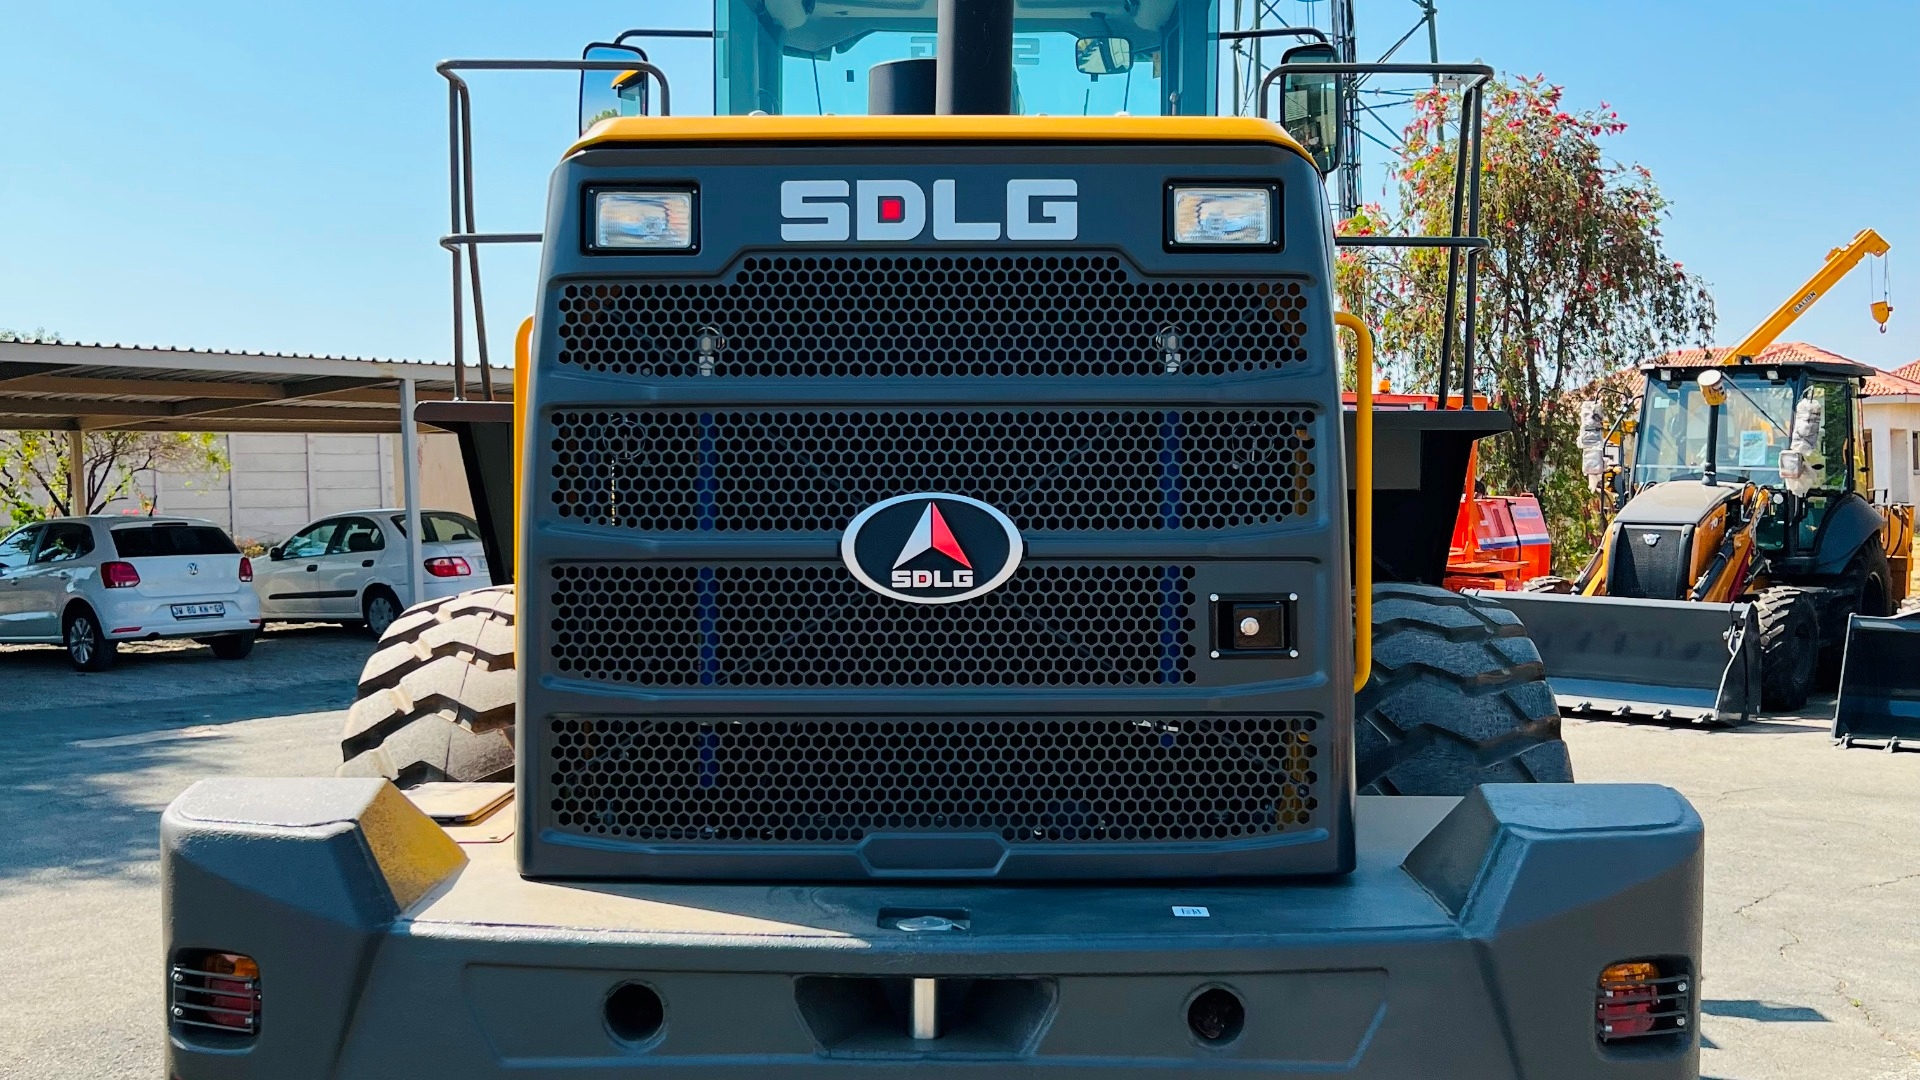 SDLG Loaders L956F FRONT END LOADER 2022 for sale by Vendel Equipment Sales Pty Ltd | Truck & Trailer Marketplace